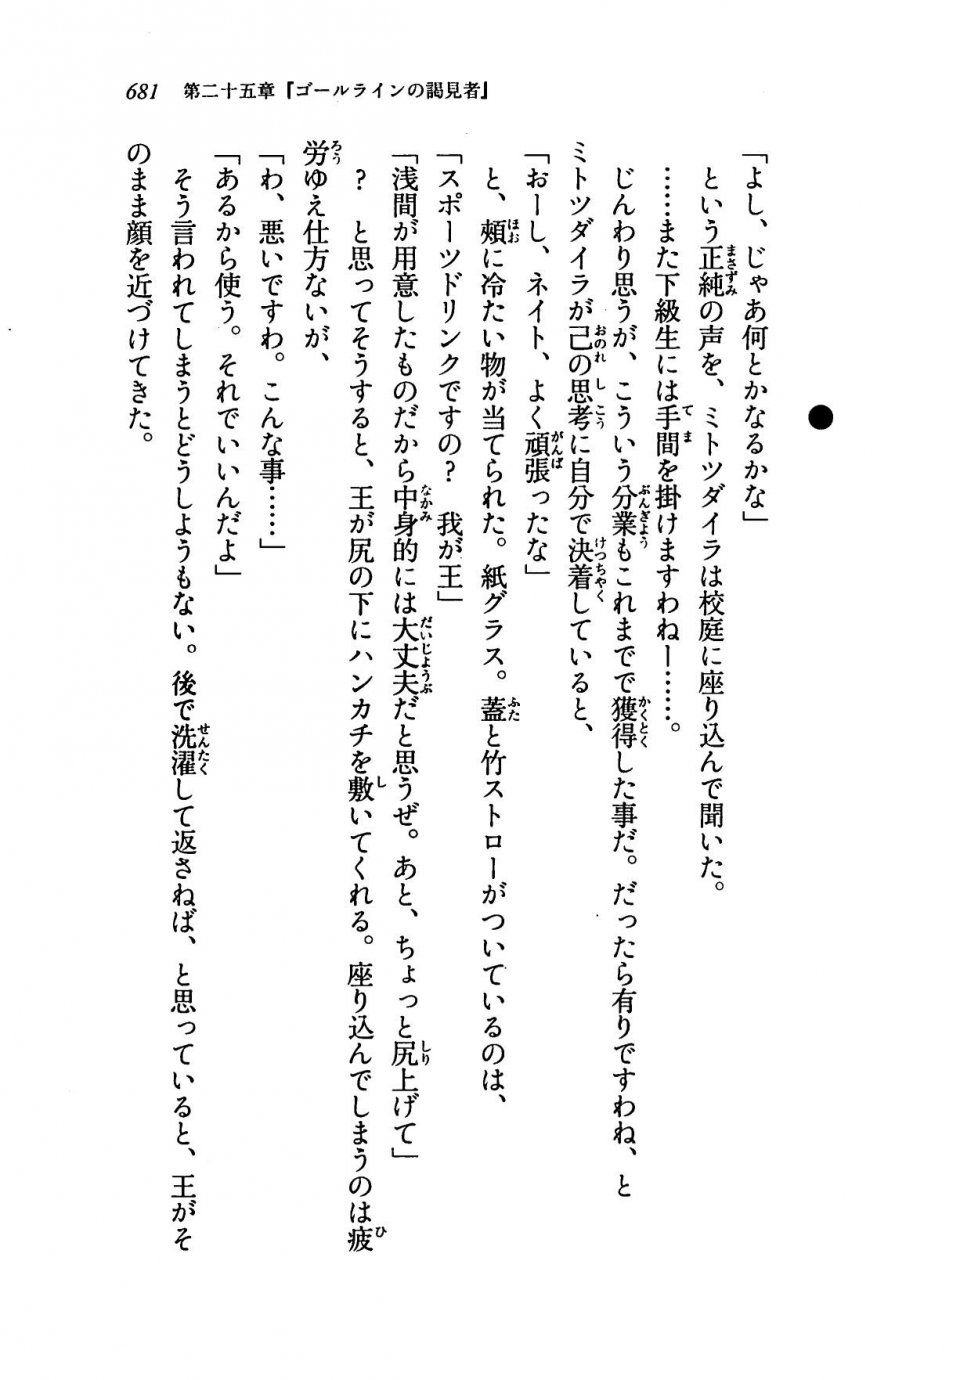 Kyoukai Senjou no Horizon LN Vol 19(8A) - Photo #681